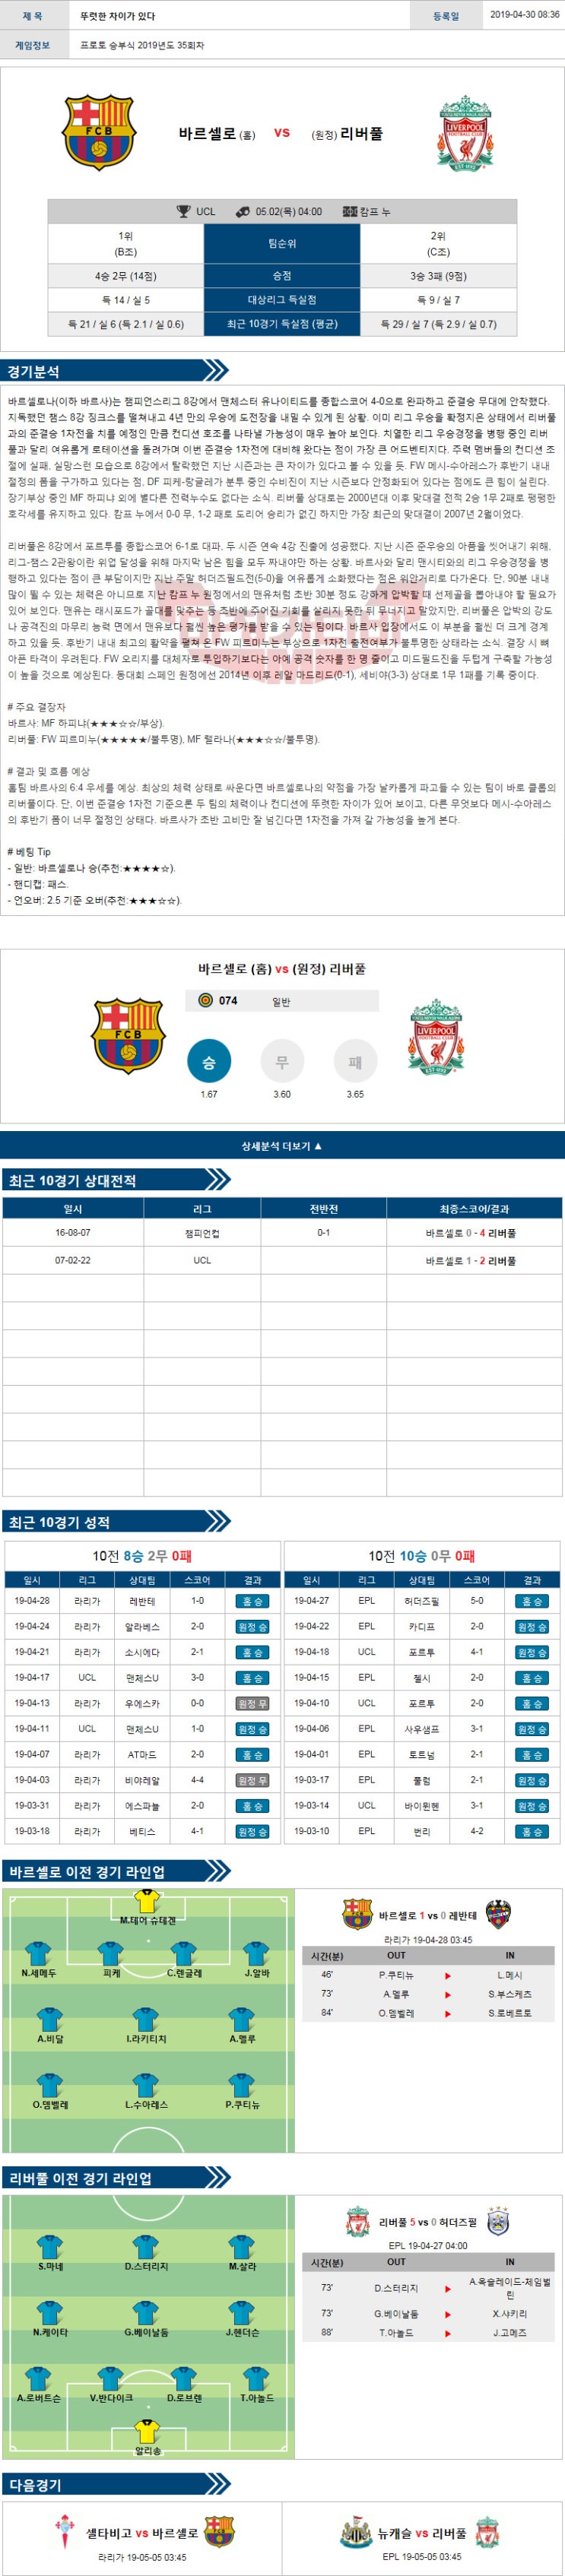 해외축구분석 5월1일 챔피언스리그 바르셀로나vs리버풀